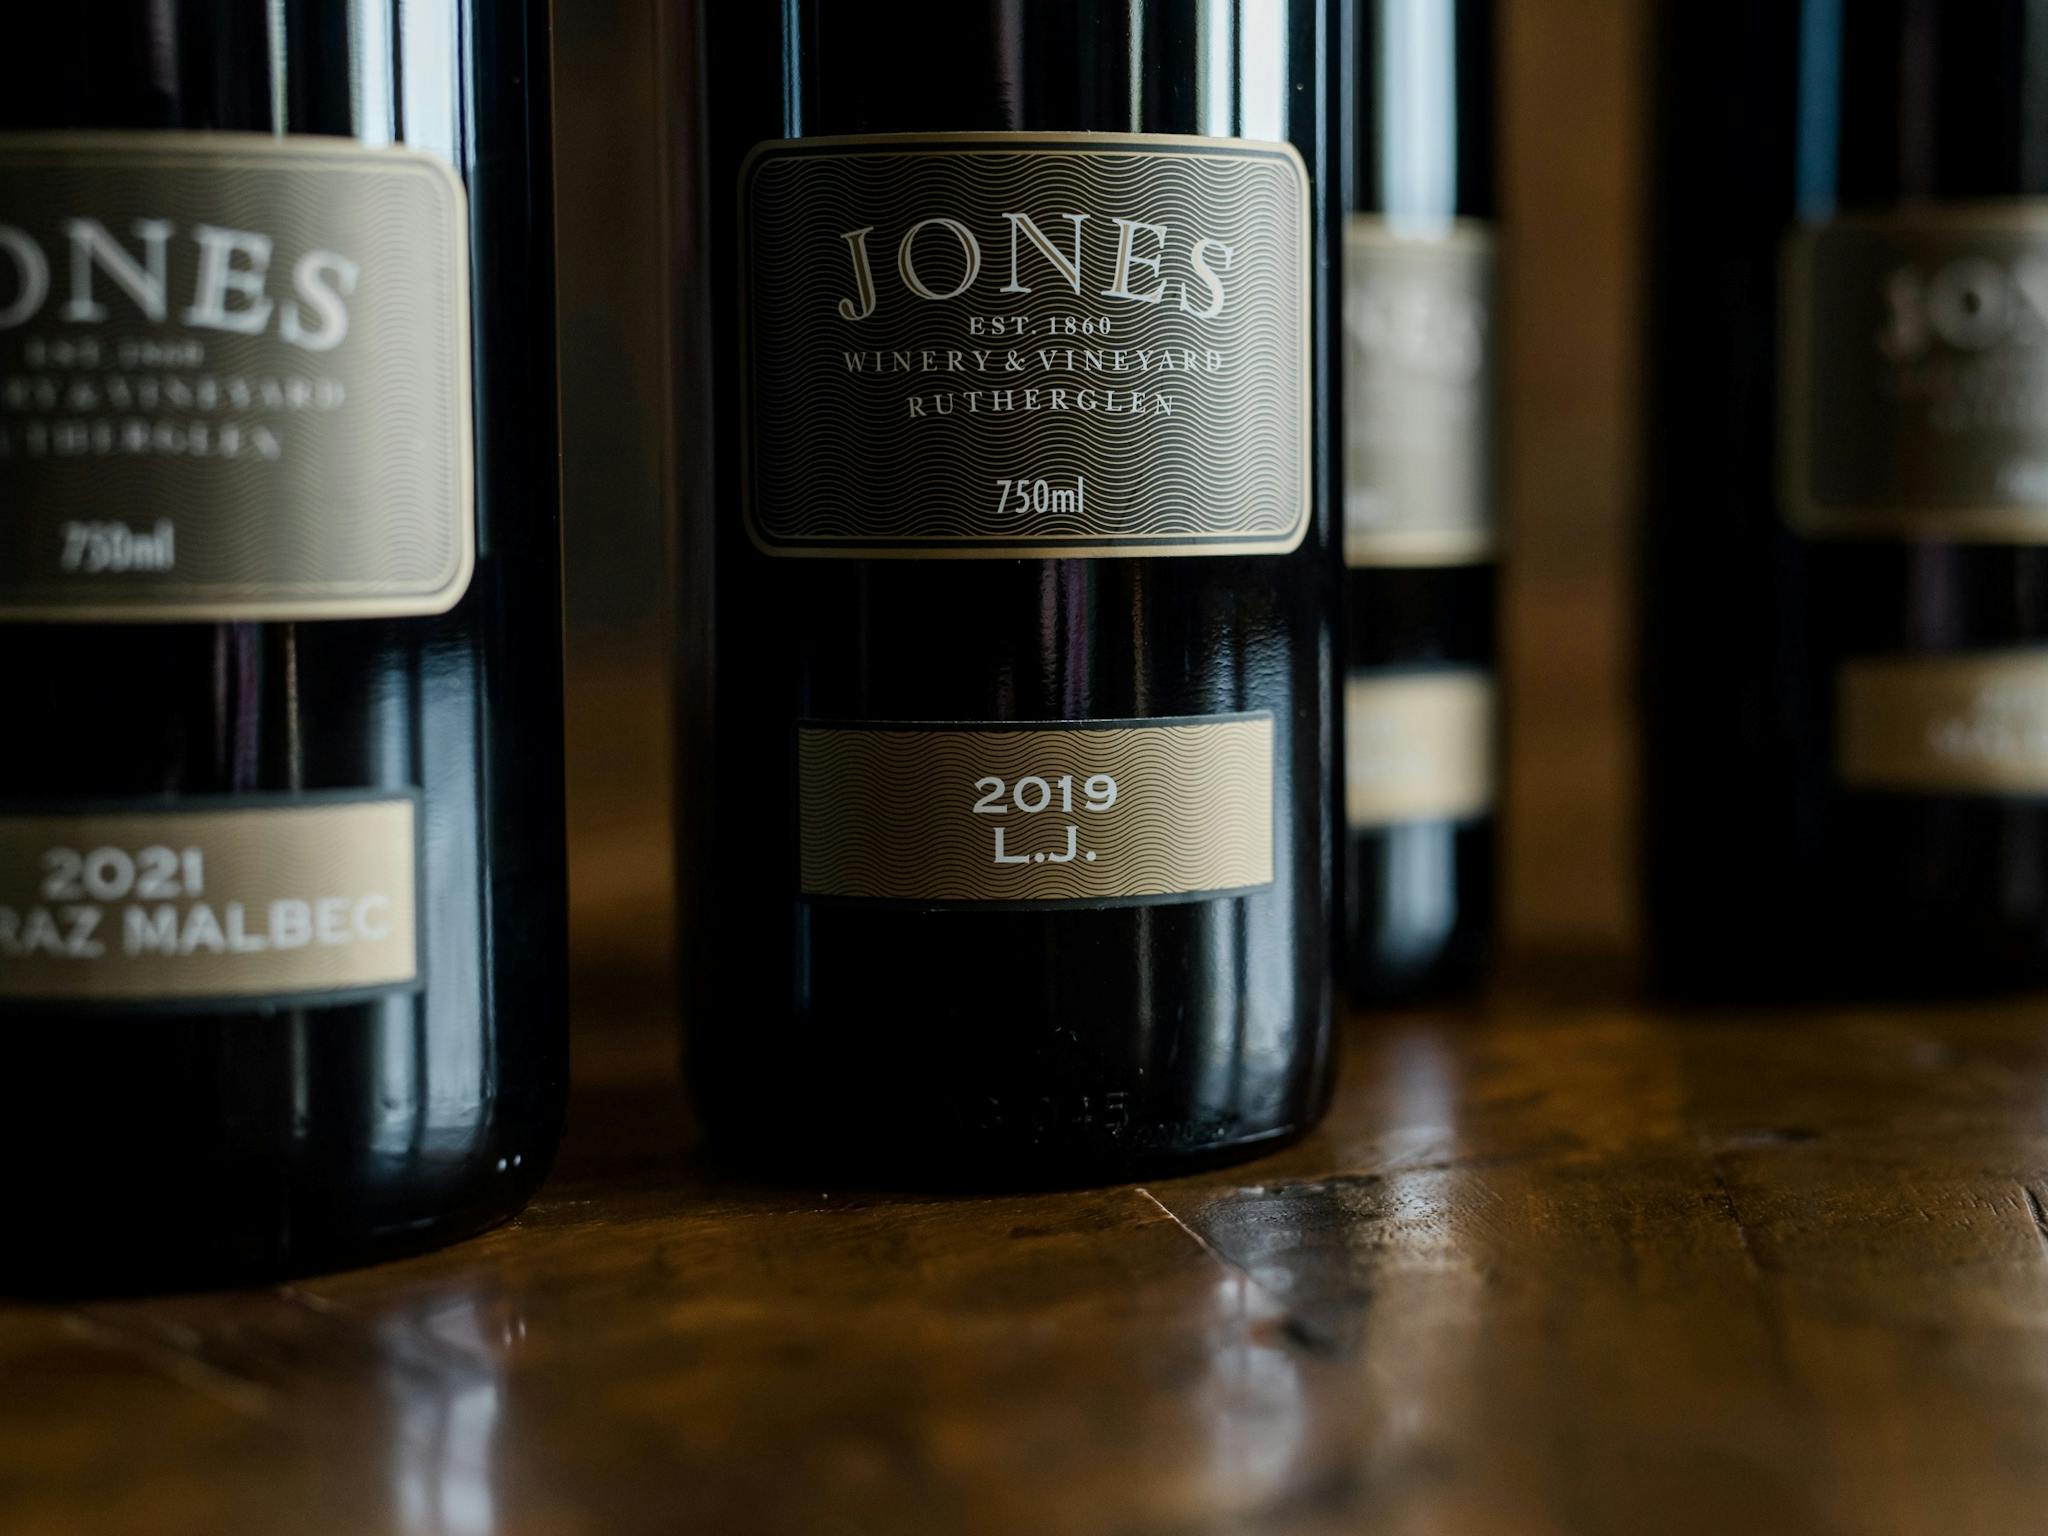 Jones Winery & Vineyard Rutherglen LJ Shiraz